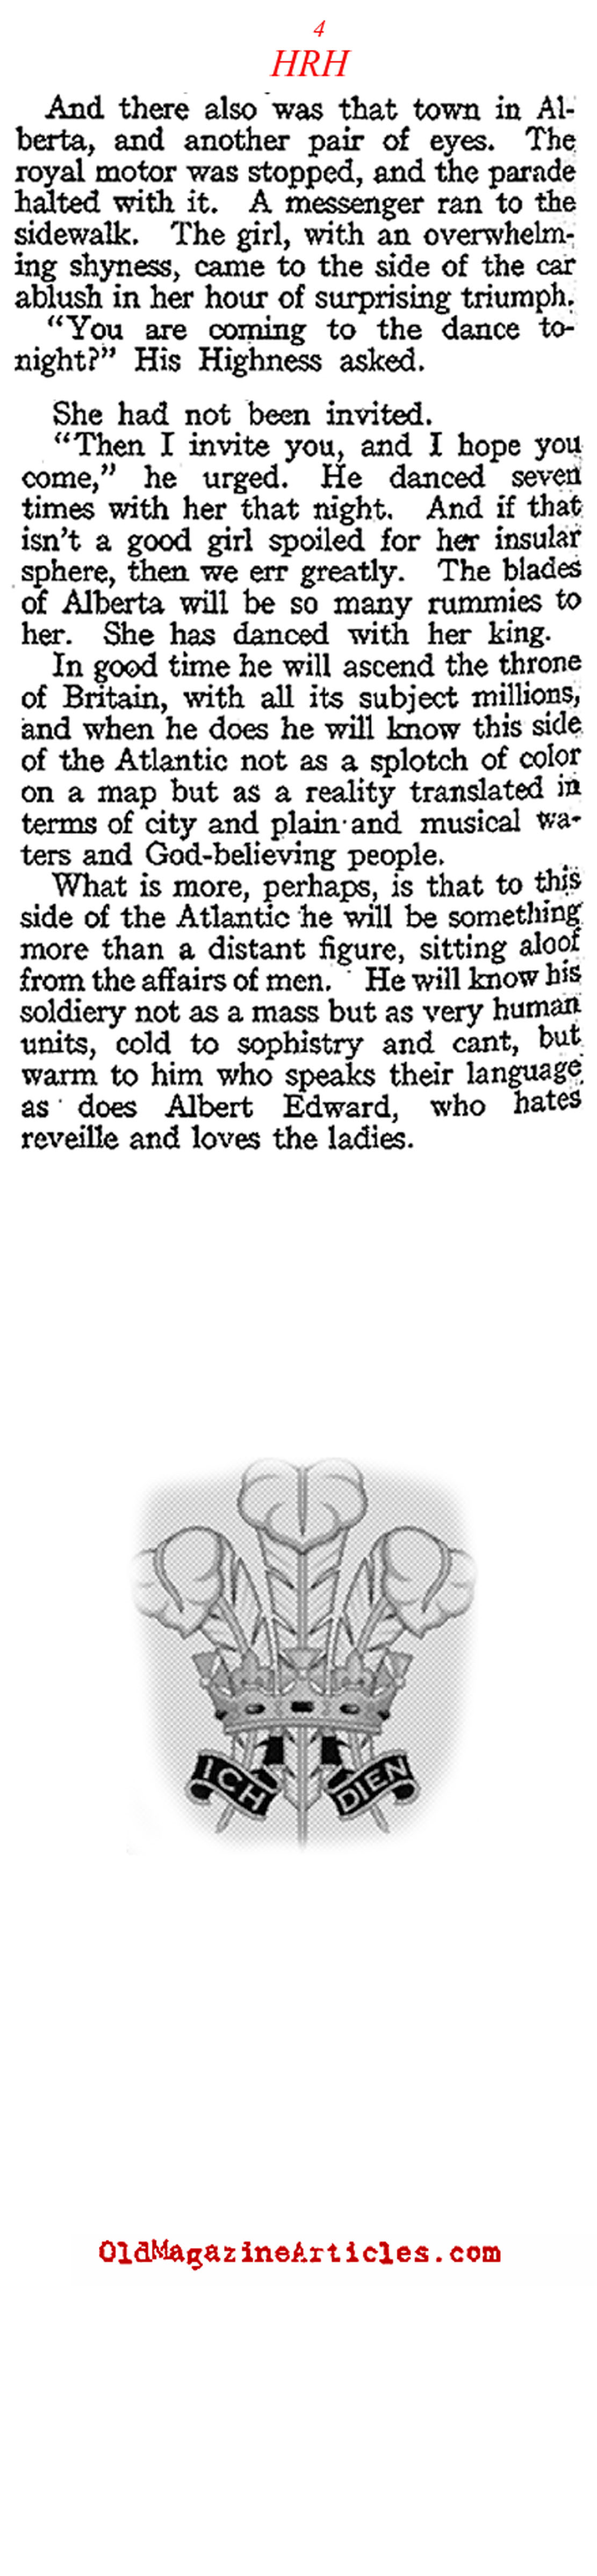 Edward VIII: A Regular Guy (American Legion Weekly, 1919)